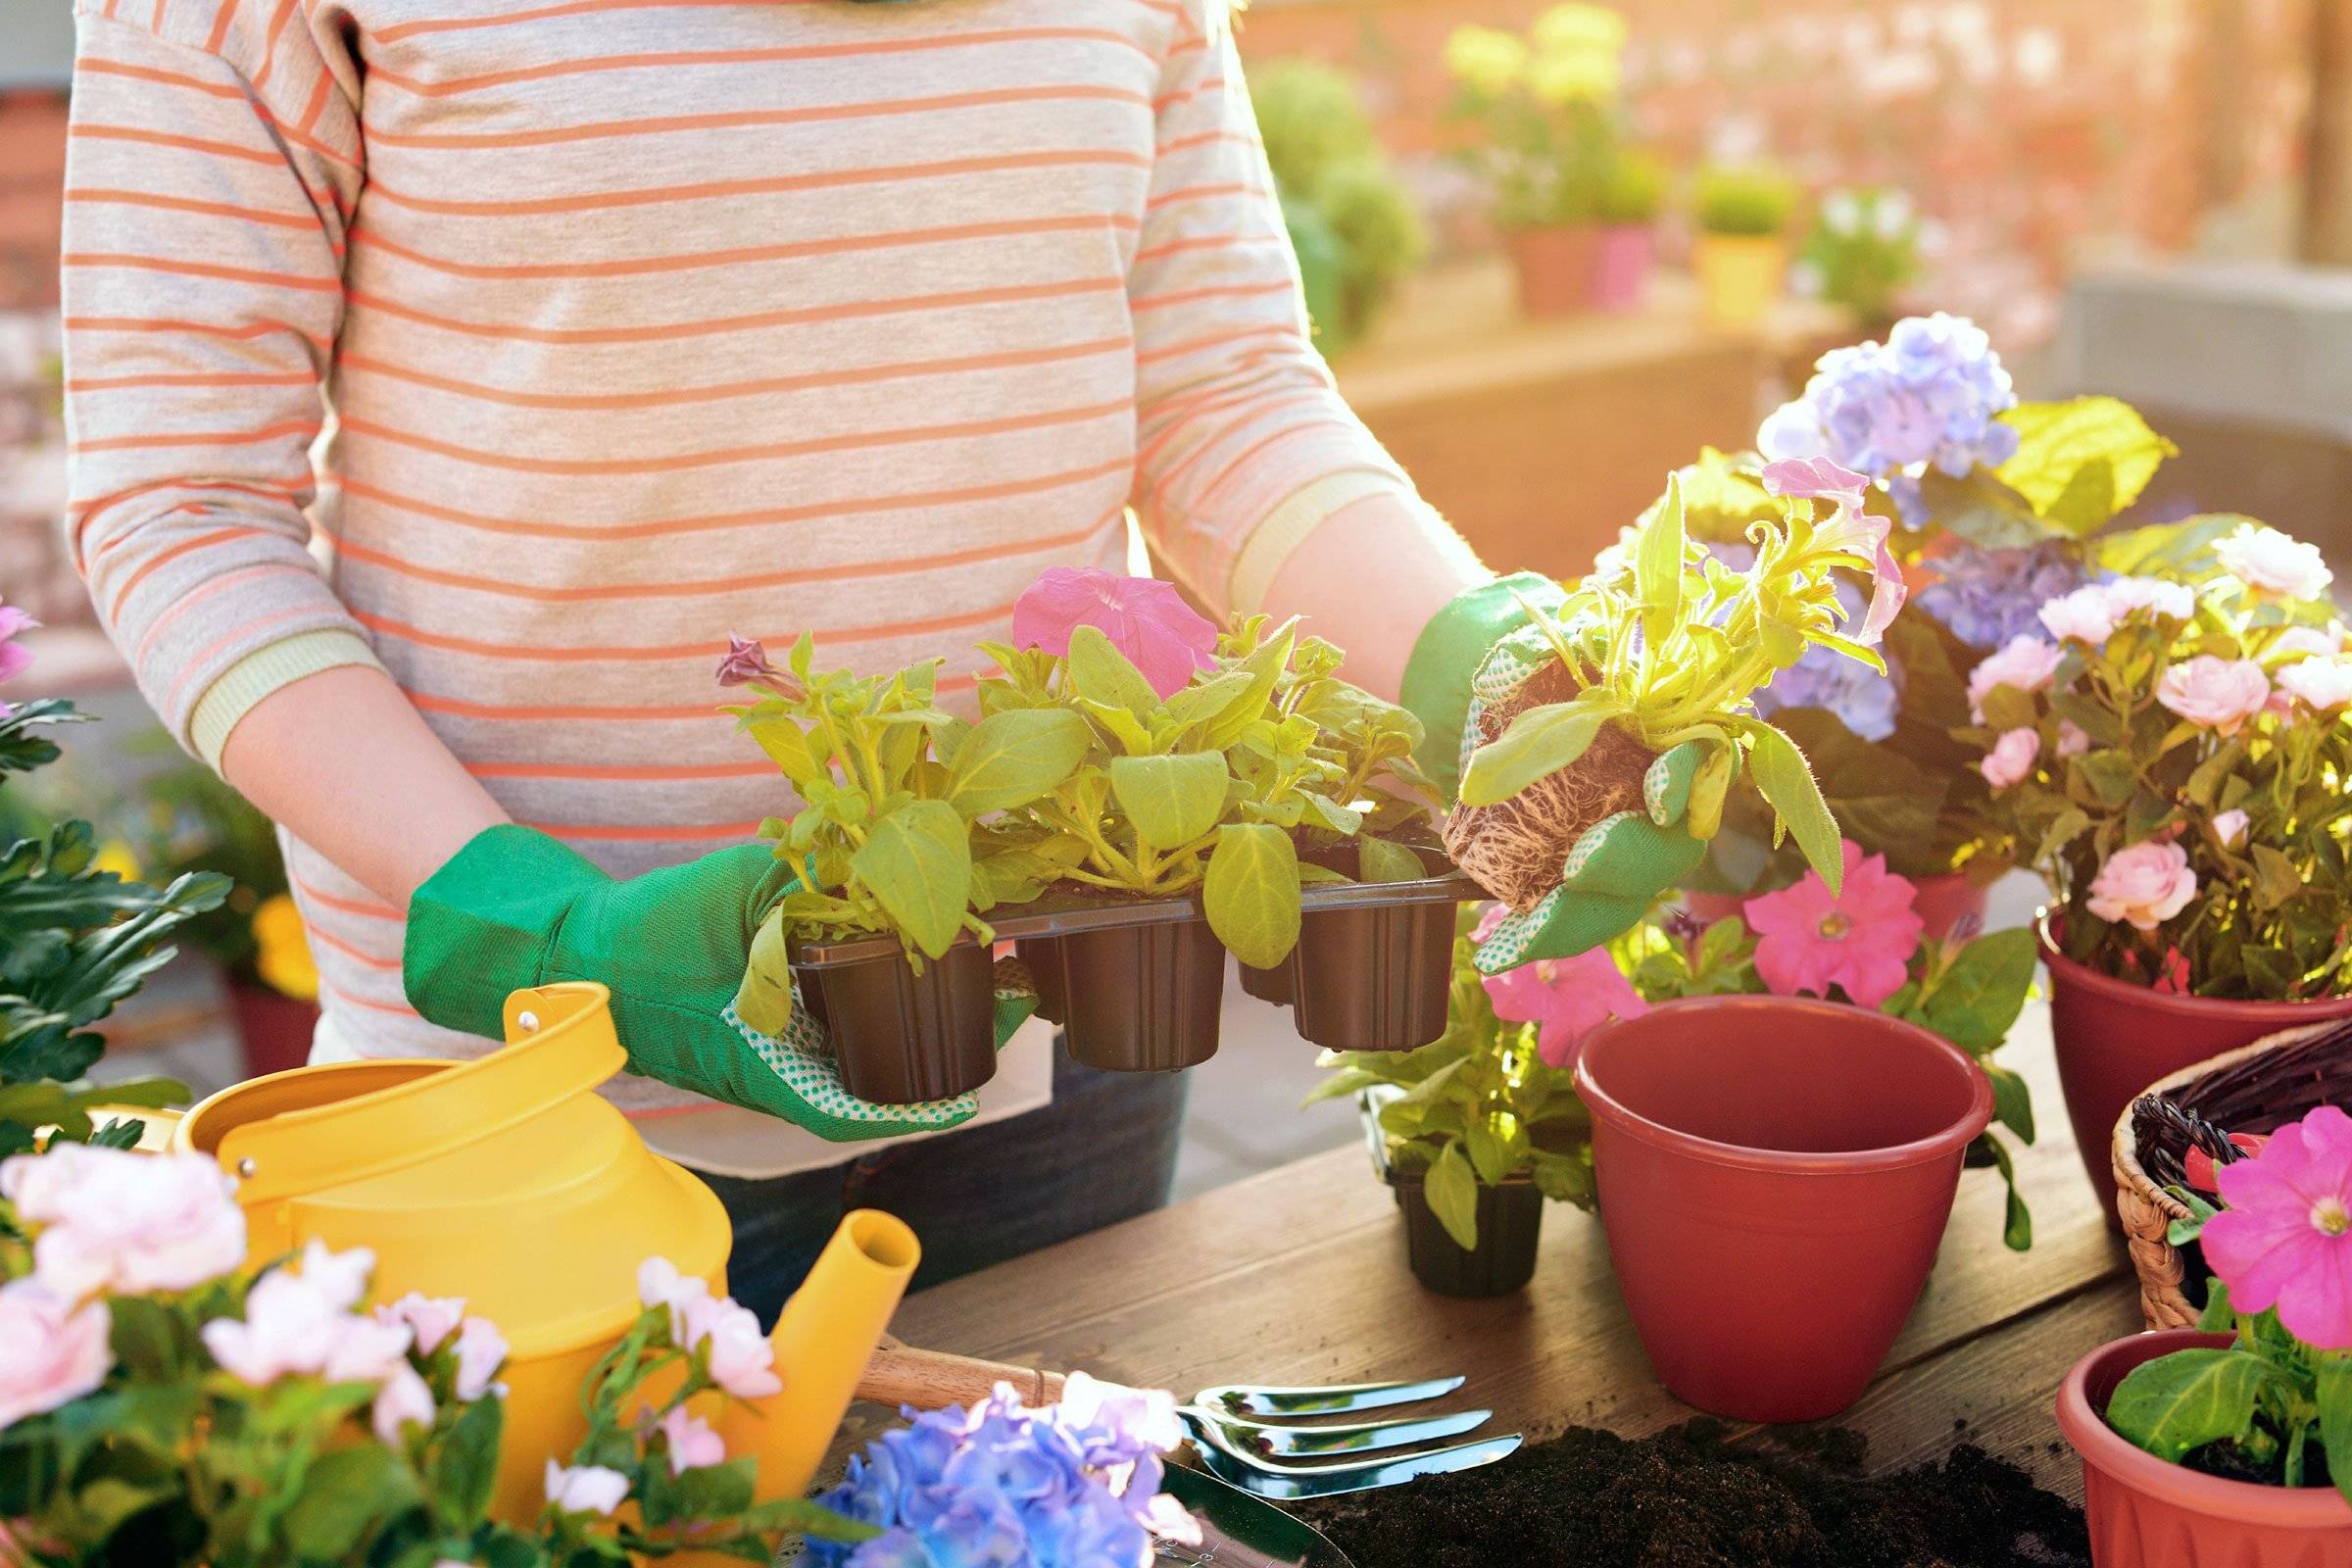 Благоприятные дни для пересадки комнатных растений в 2022 году - своими руками на даче  - как посеять, сажать, ухаживать за растениями и цветами